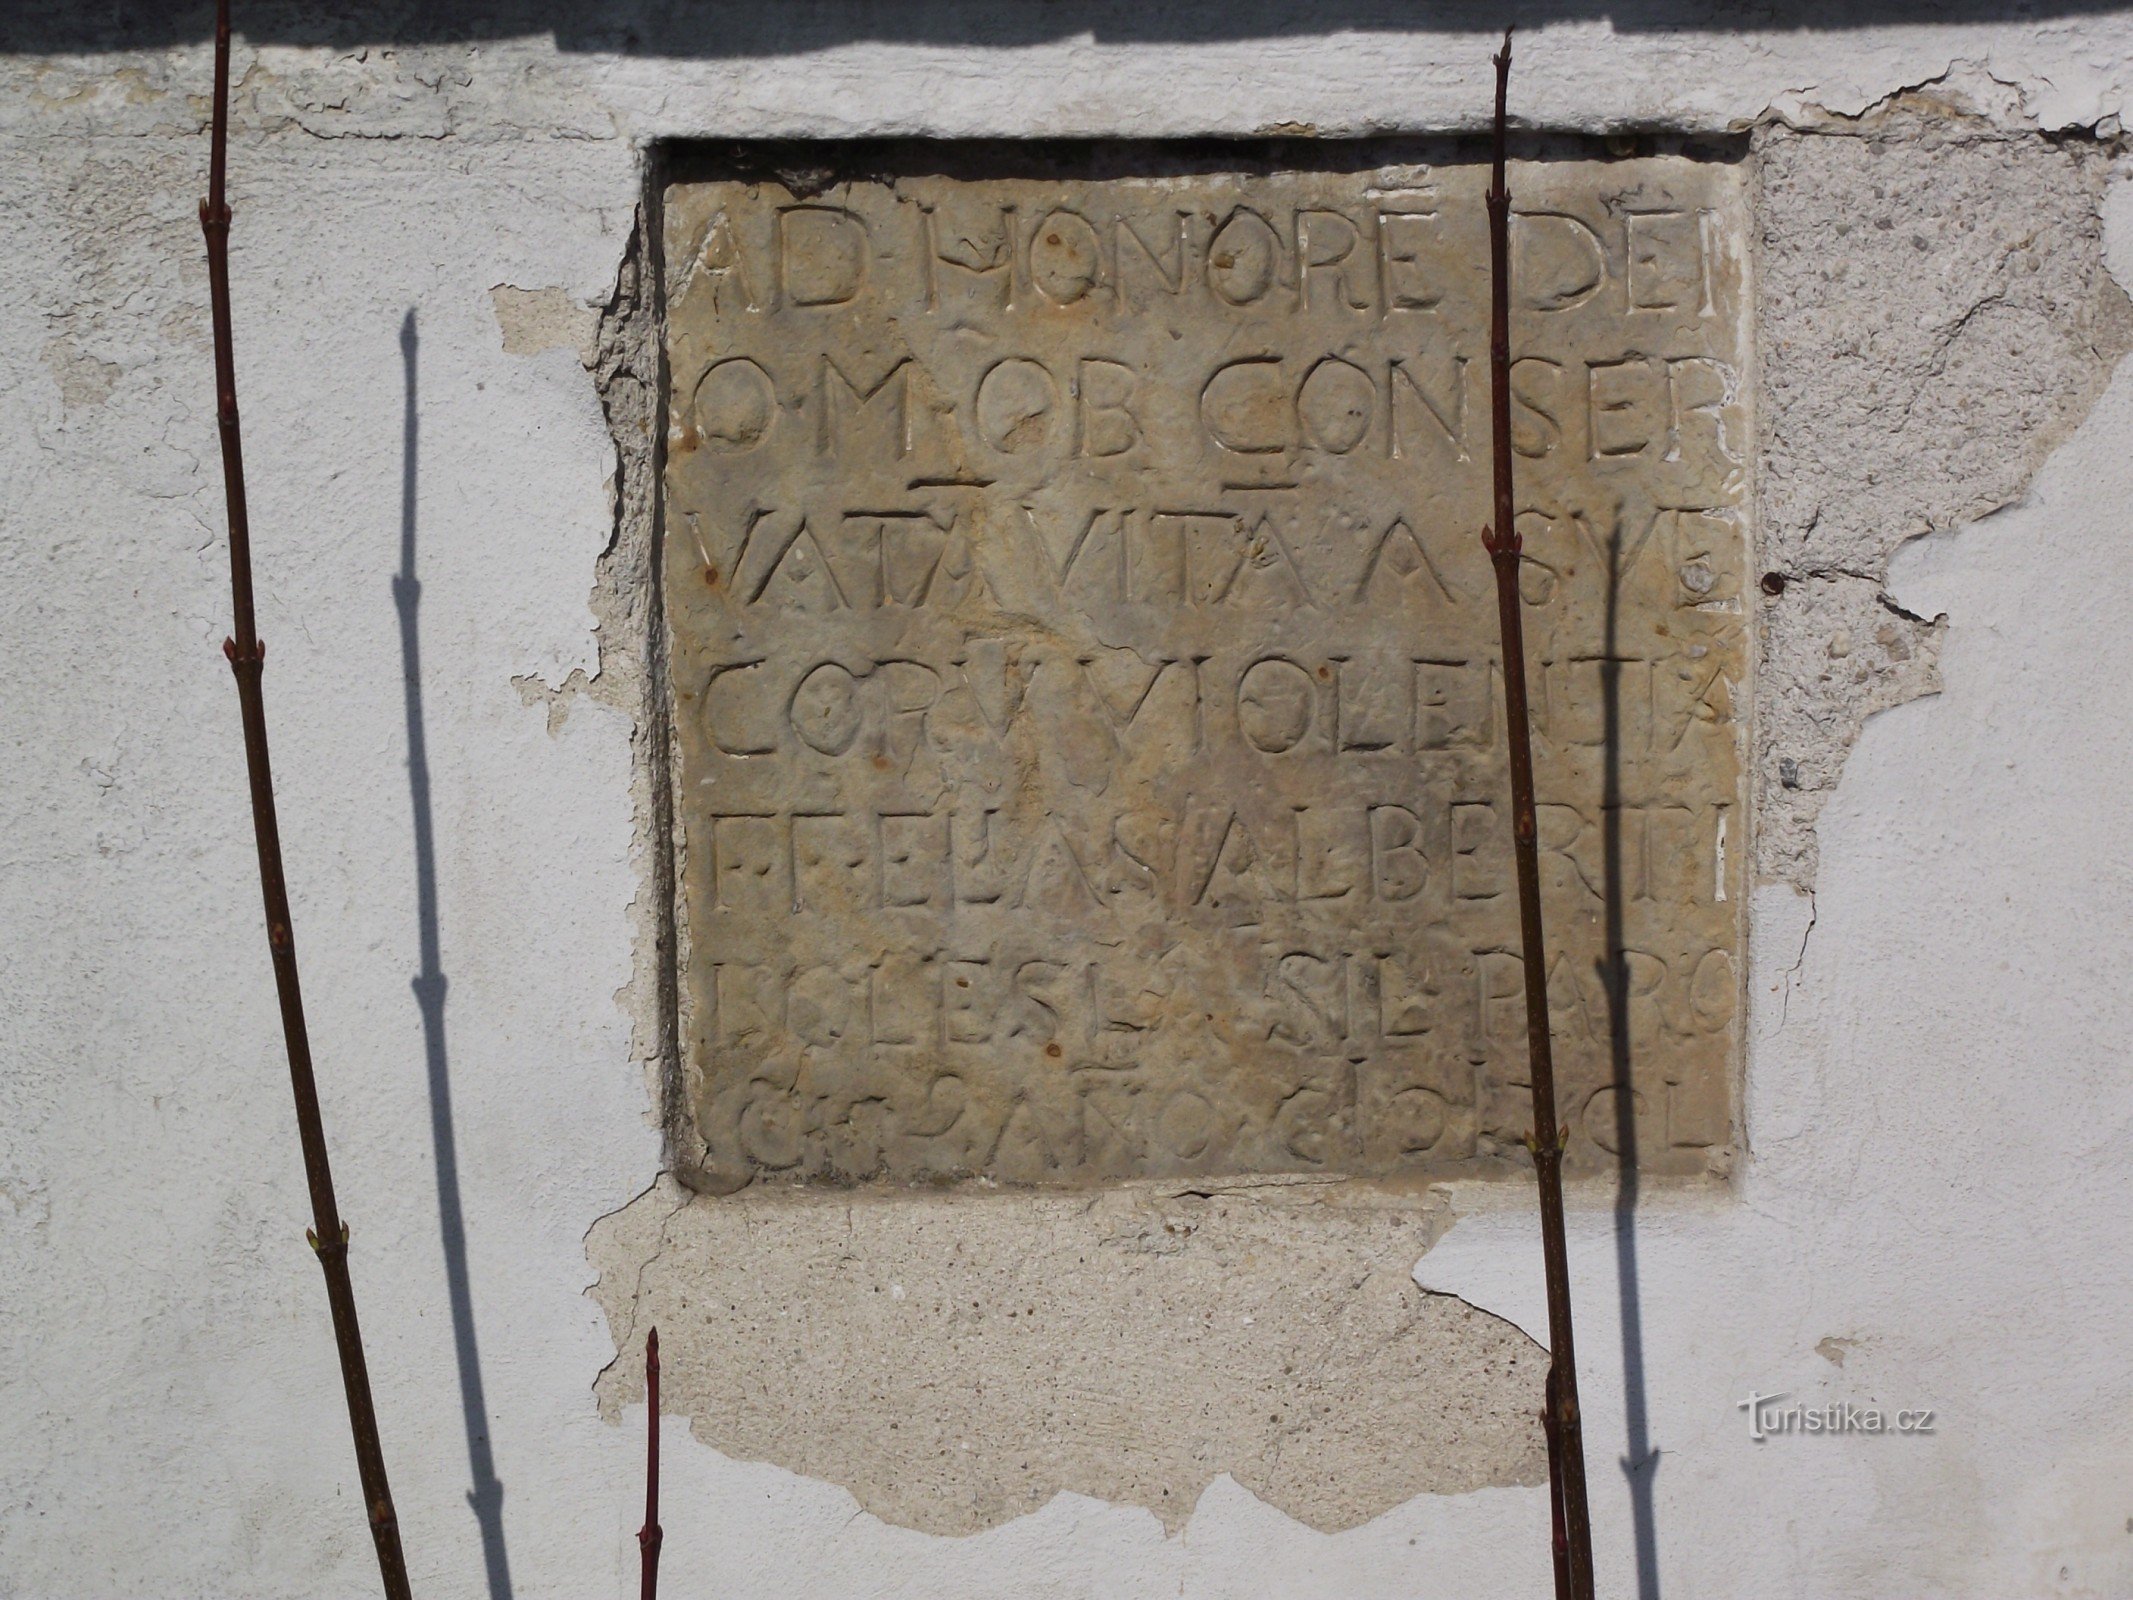 tableta de piedra arenisca con una inscripción de Cuaresma